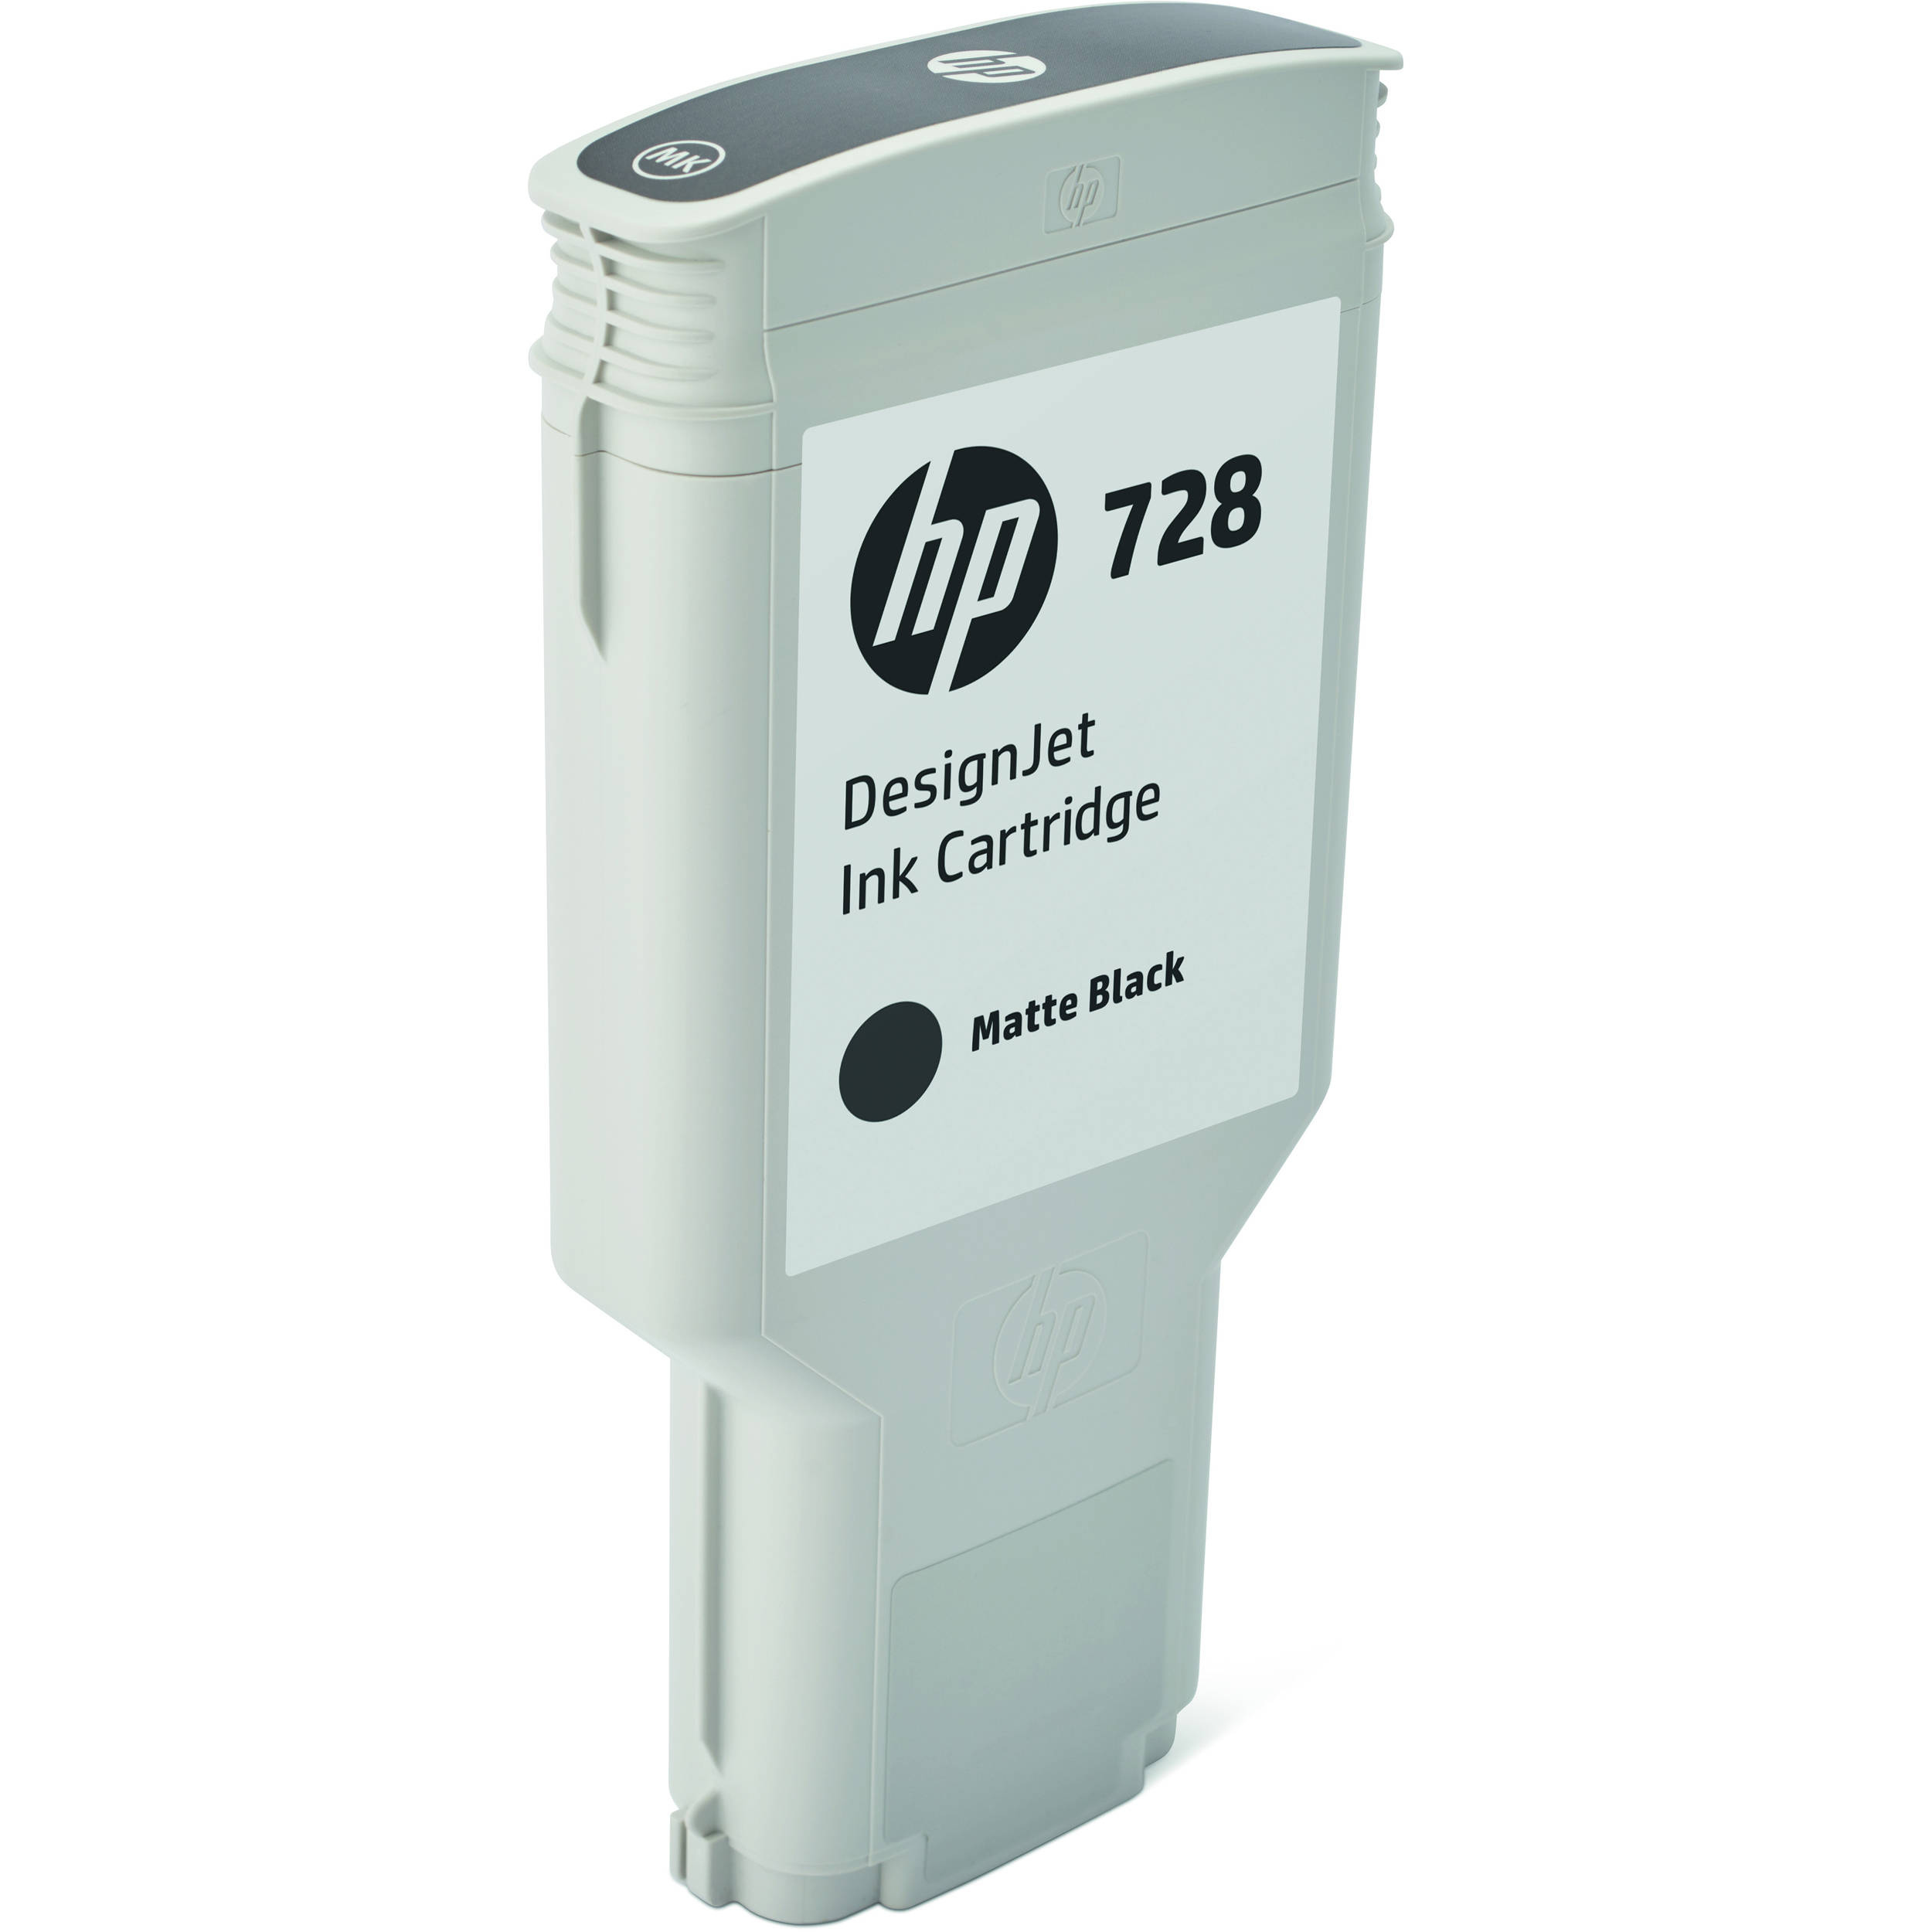 HP 728 Matte Black DesignJet Ink Cartridge (300ml)